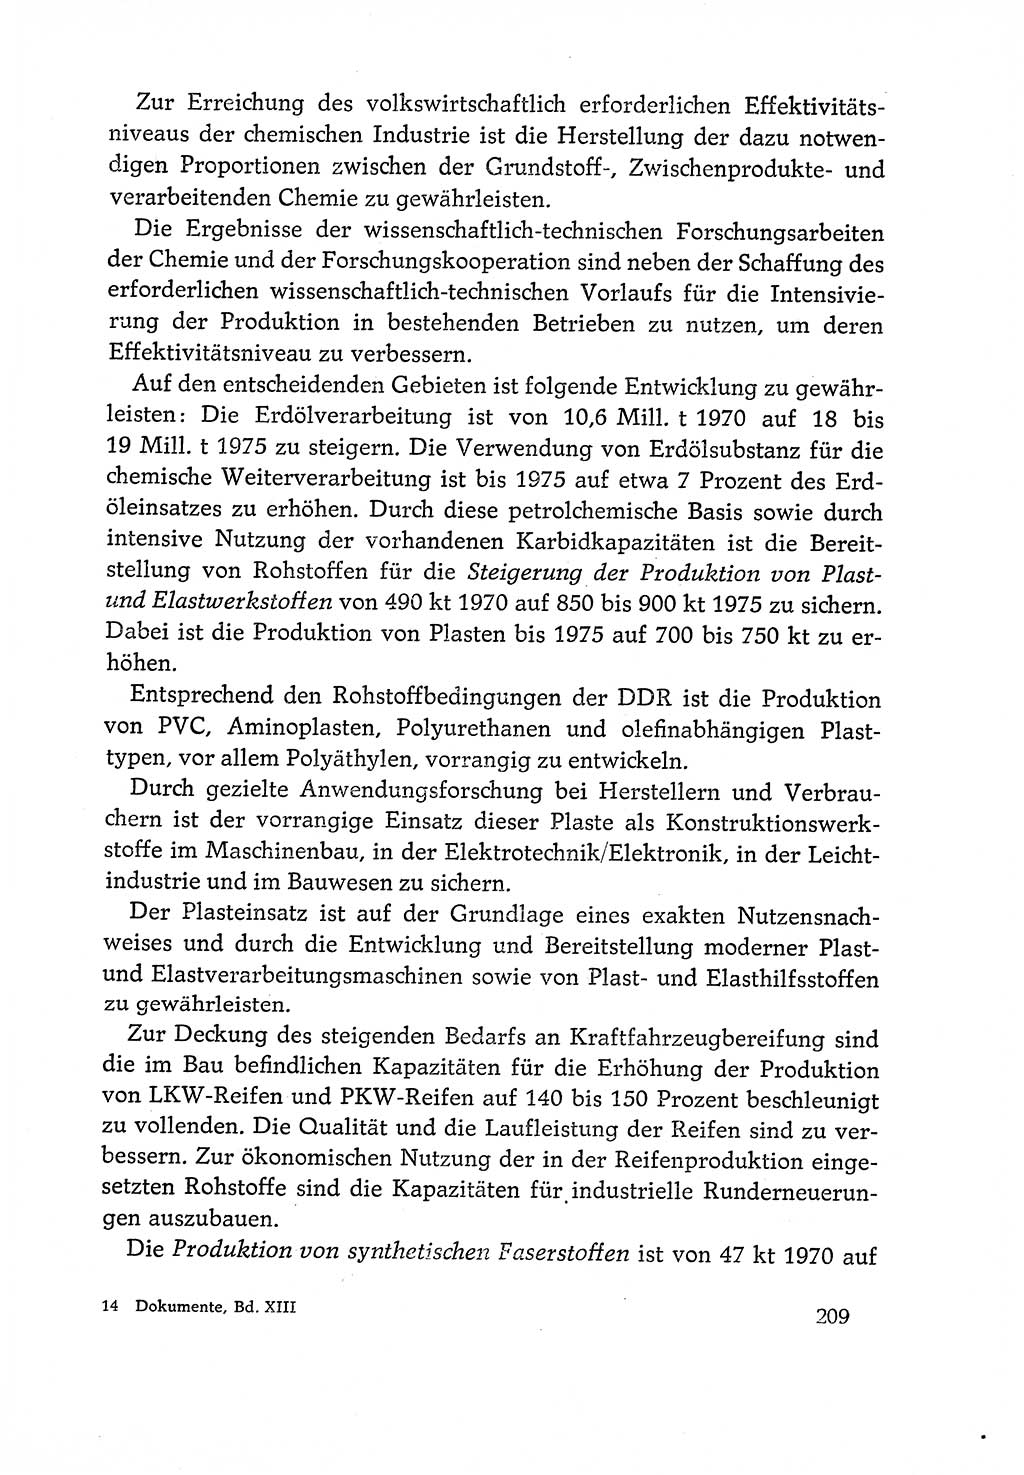 Dokumente der Sozialistischen Einheitspartei Deutschlands (SED) [Deutsche Demokratische Republik (DDR)] 1970-1971, Seite 209 (Dok. SED DDR 1970-1971, S. 209)